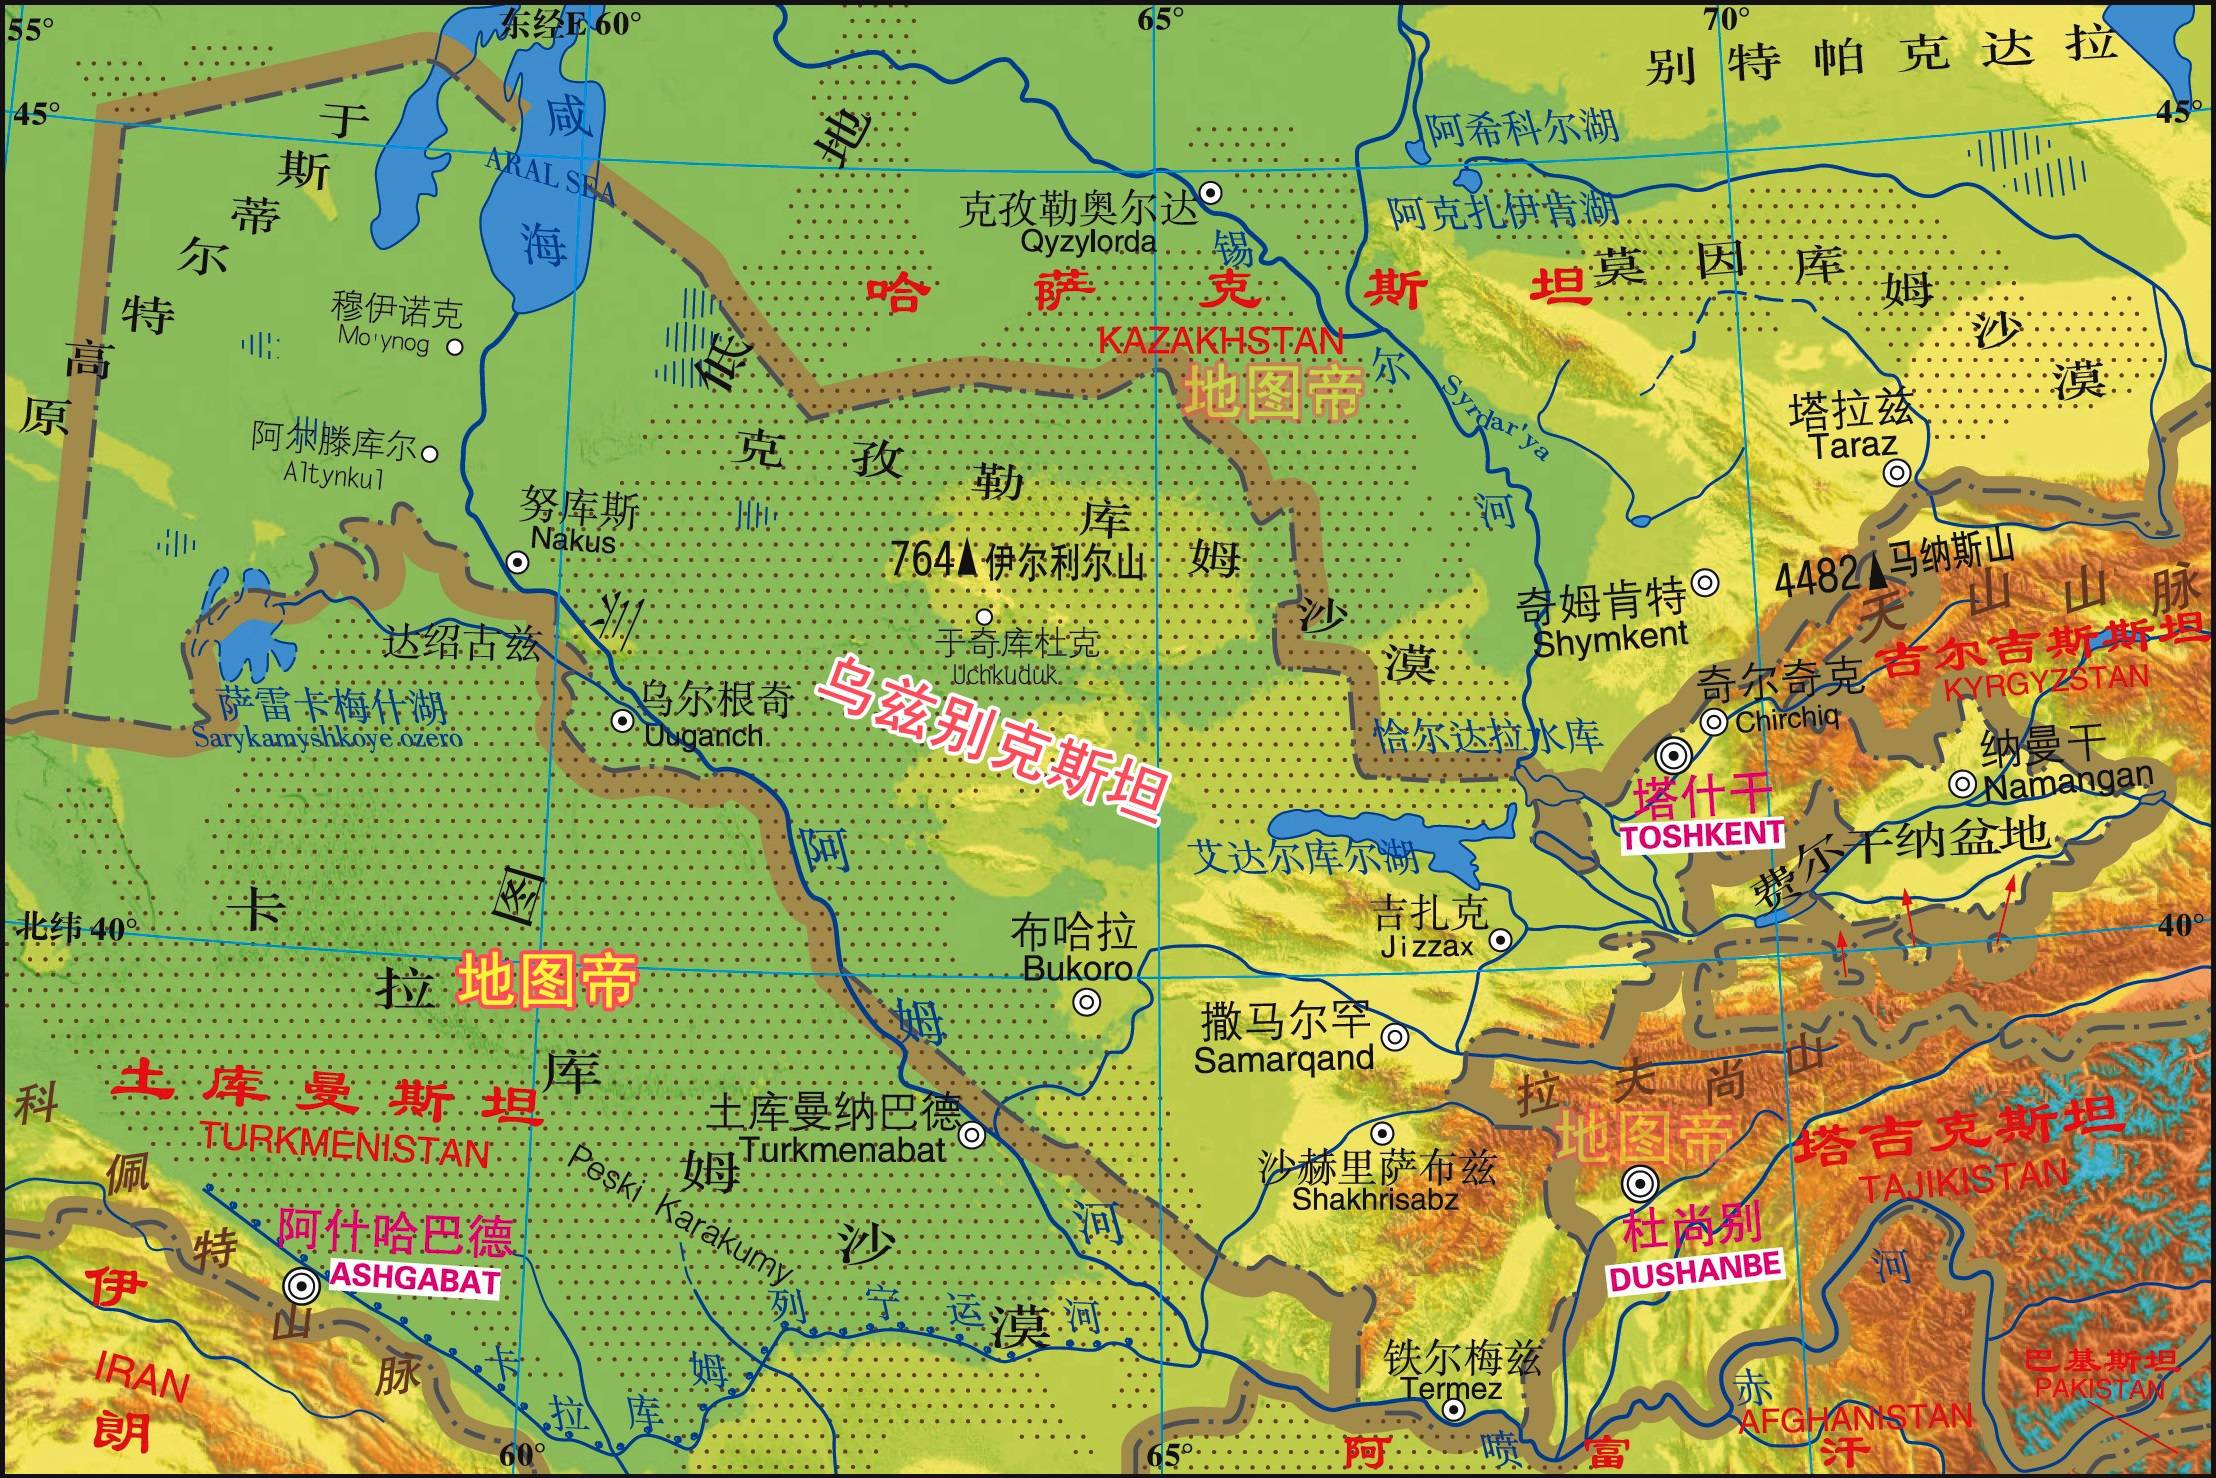 原创中亚五国,为何都把首都放在边境线附近?